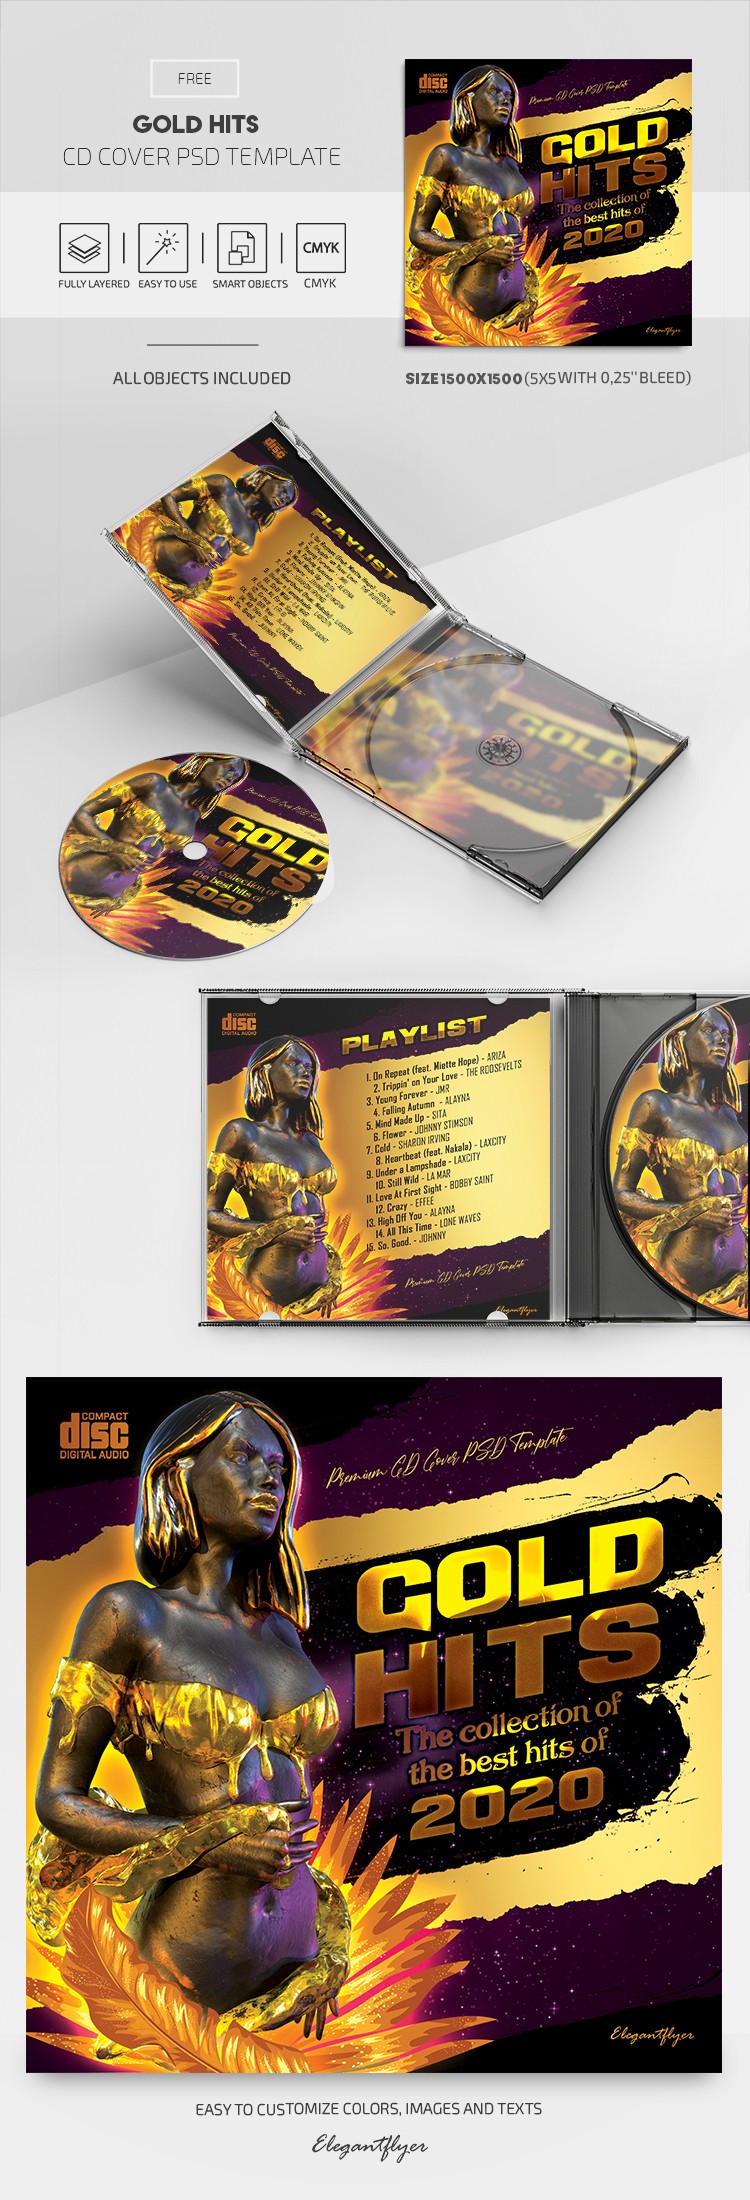 Couverture de CD Gold Hits by ElegantFlyer